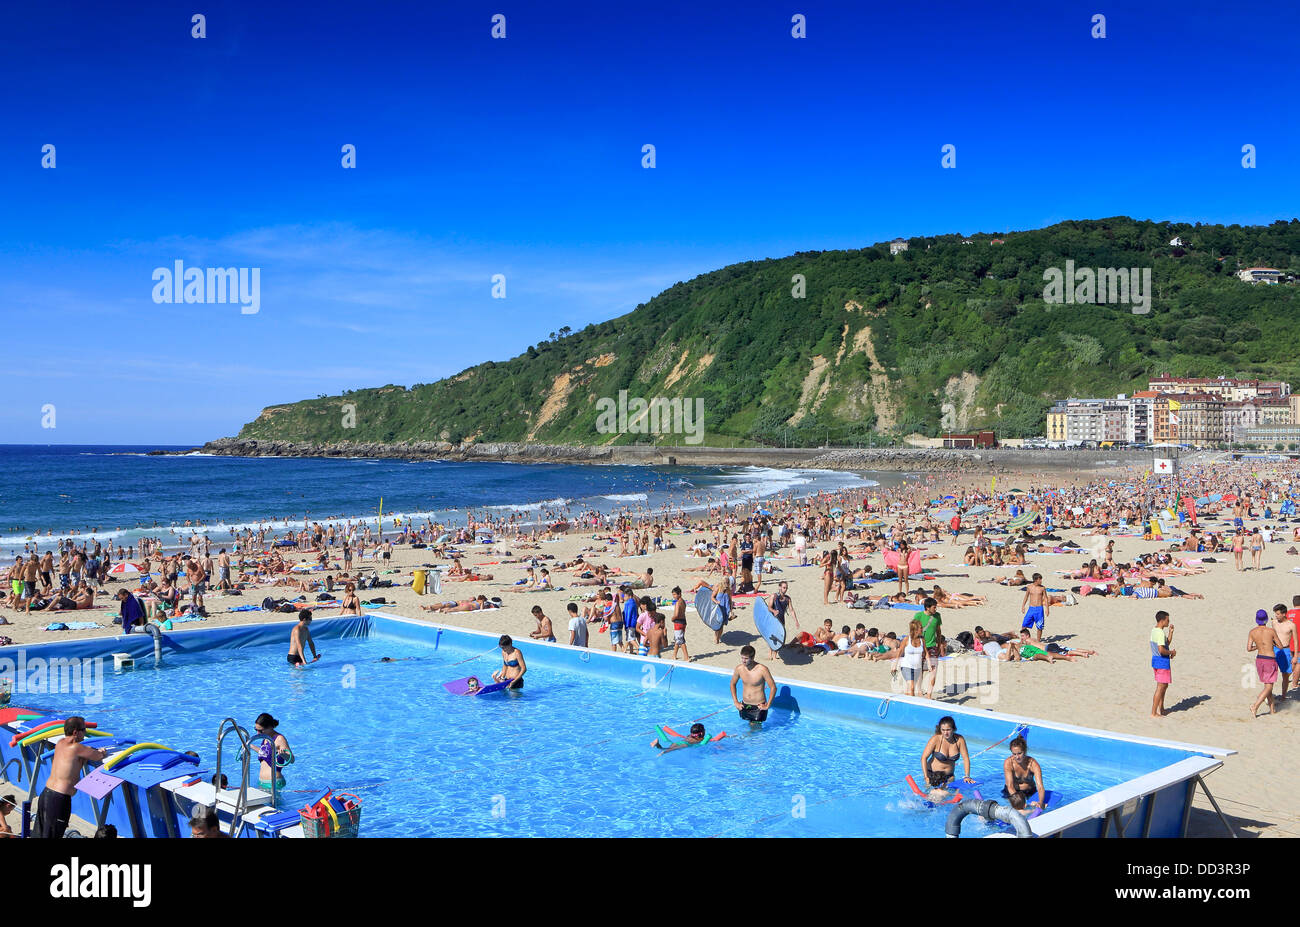 Schwimmbad im Einsatz auf einem überfüllten Gros Strand während des Sommers in San Sebastian, Spanien Stockfoto